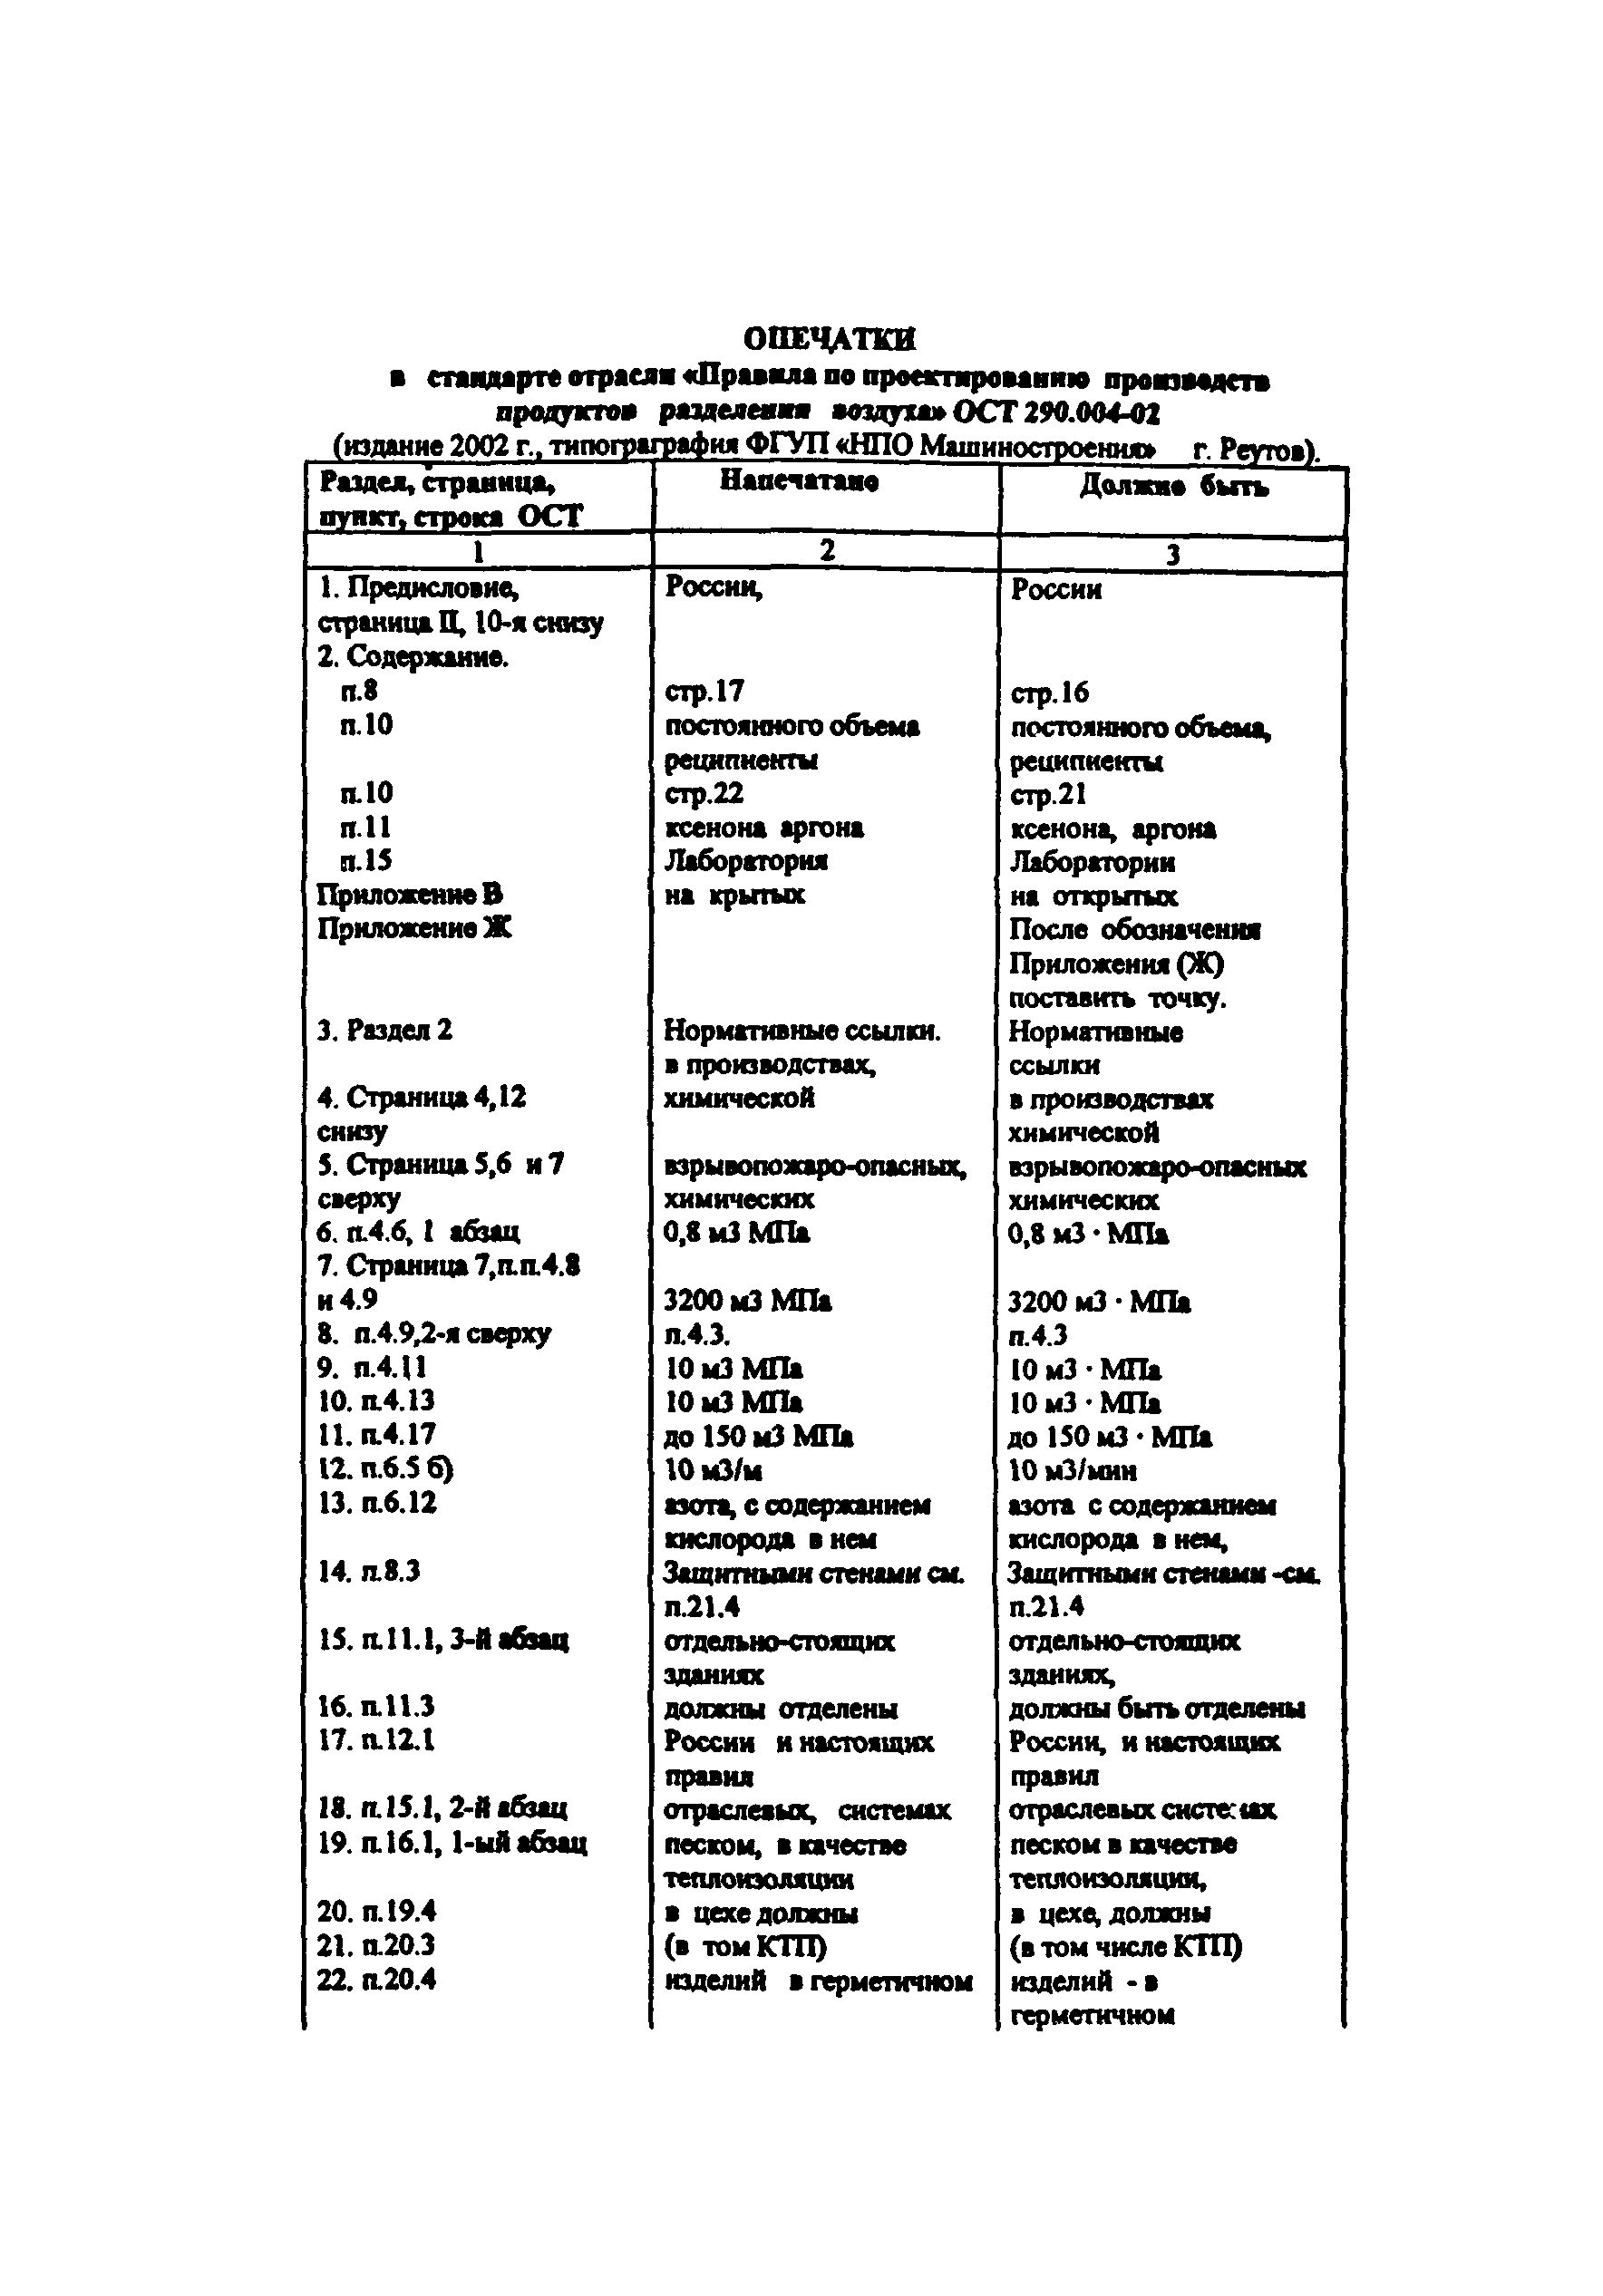 ОСТ 290.004-02